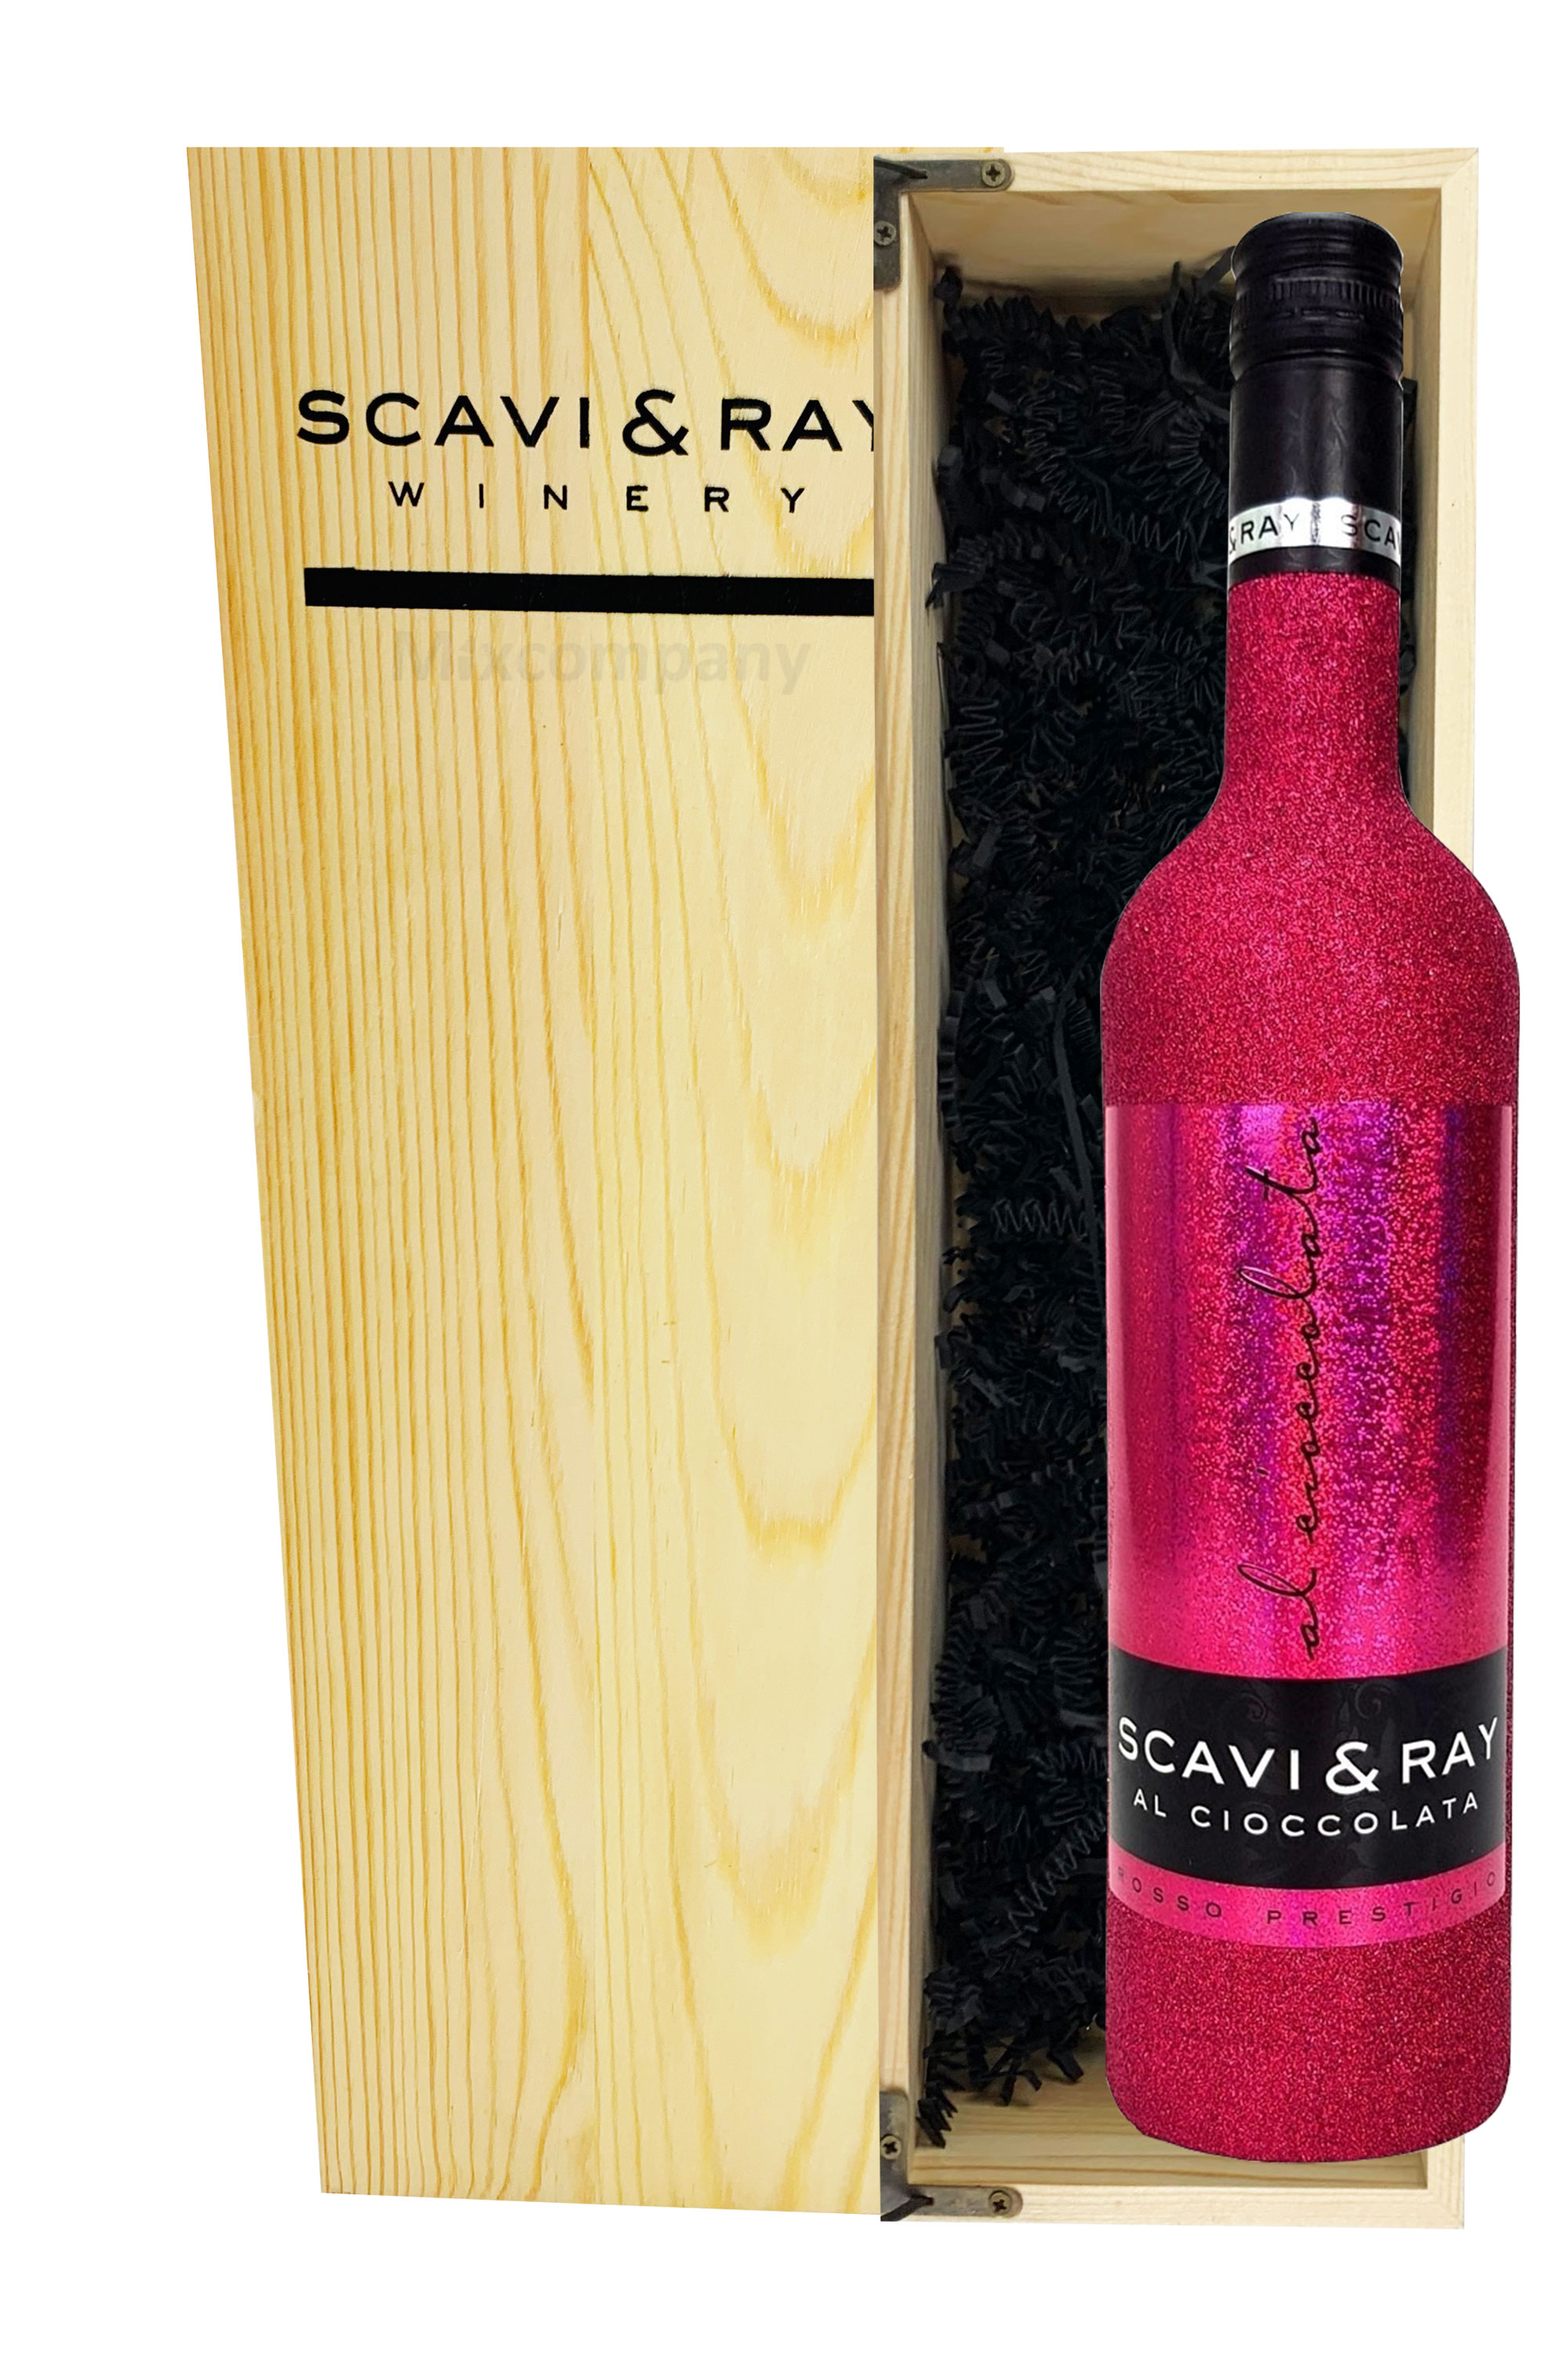 Scavi & Ray Giftbox Geschenkset - Scavi & Ray Al Cioccolata Rotwein Cuvèe 0,75l (10% Vol) Bling Bling Glitzer Glitzerflasche Hot Pink mit Holzkiste - [Enthält Sulfite]